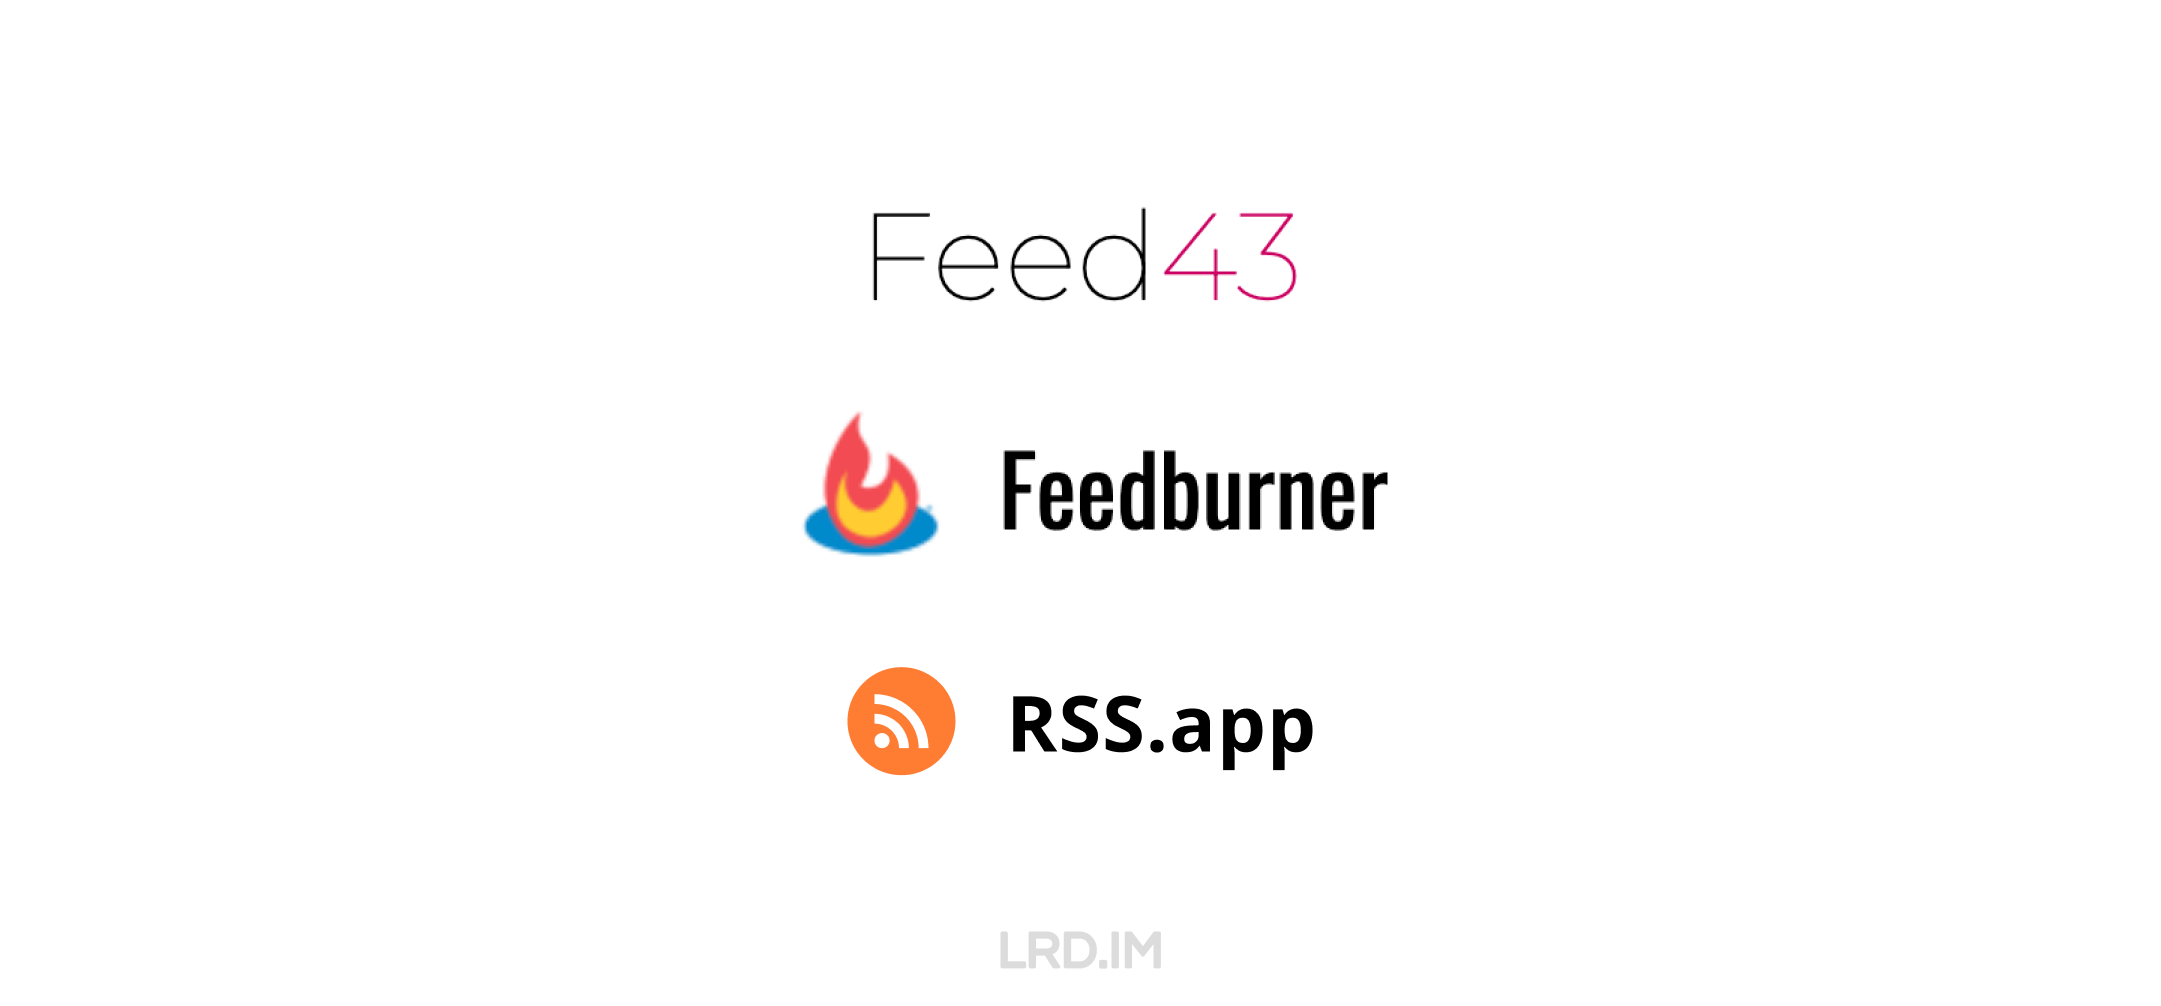 我尝试使用过的三个 RSS 服务提供商的产品 LOGO，包括：Feed43、Feedburner、RSS.app。